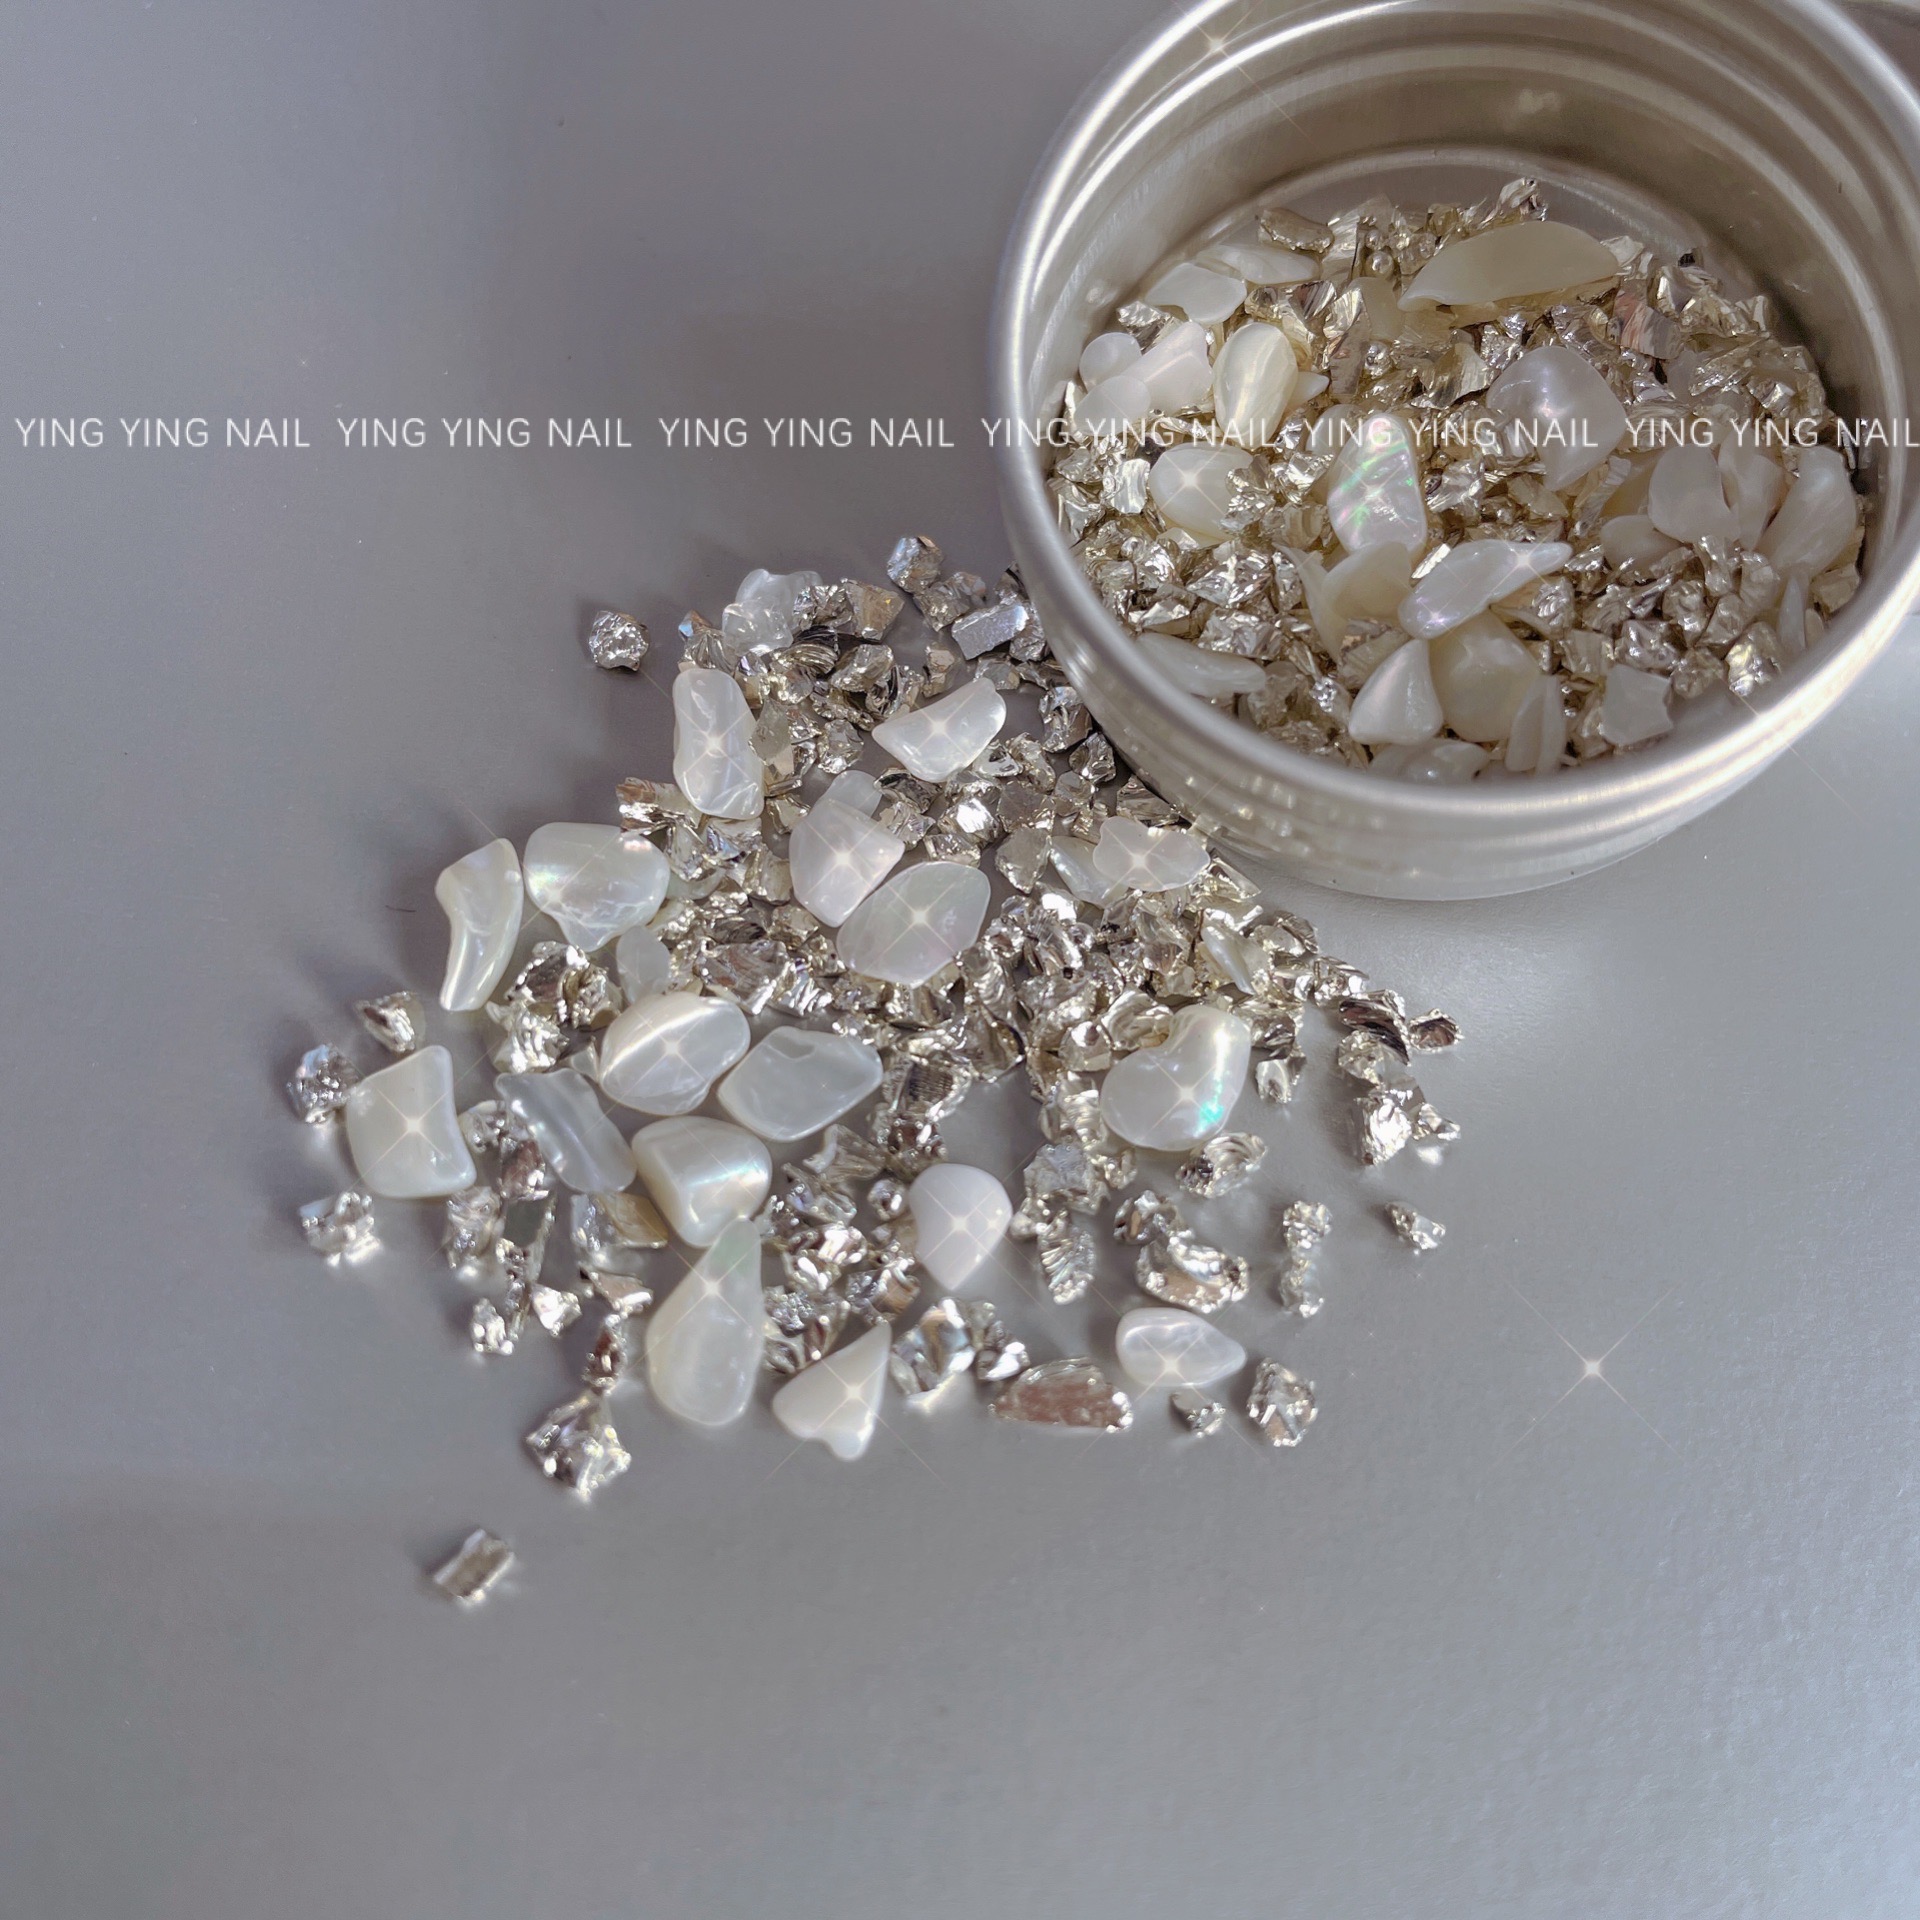 美甲银色金属异型装饰饰品白色贝壳混合装指甲个性搭配素材材料品